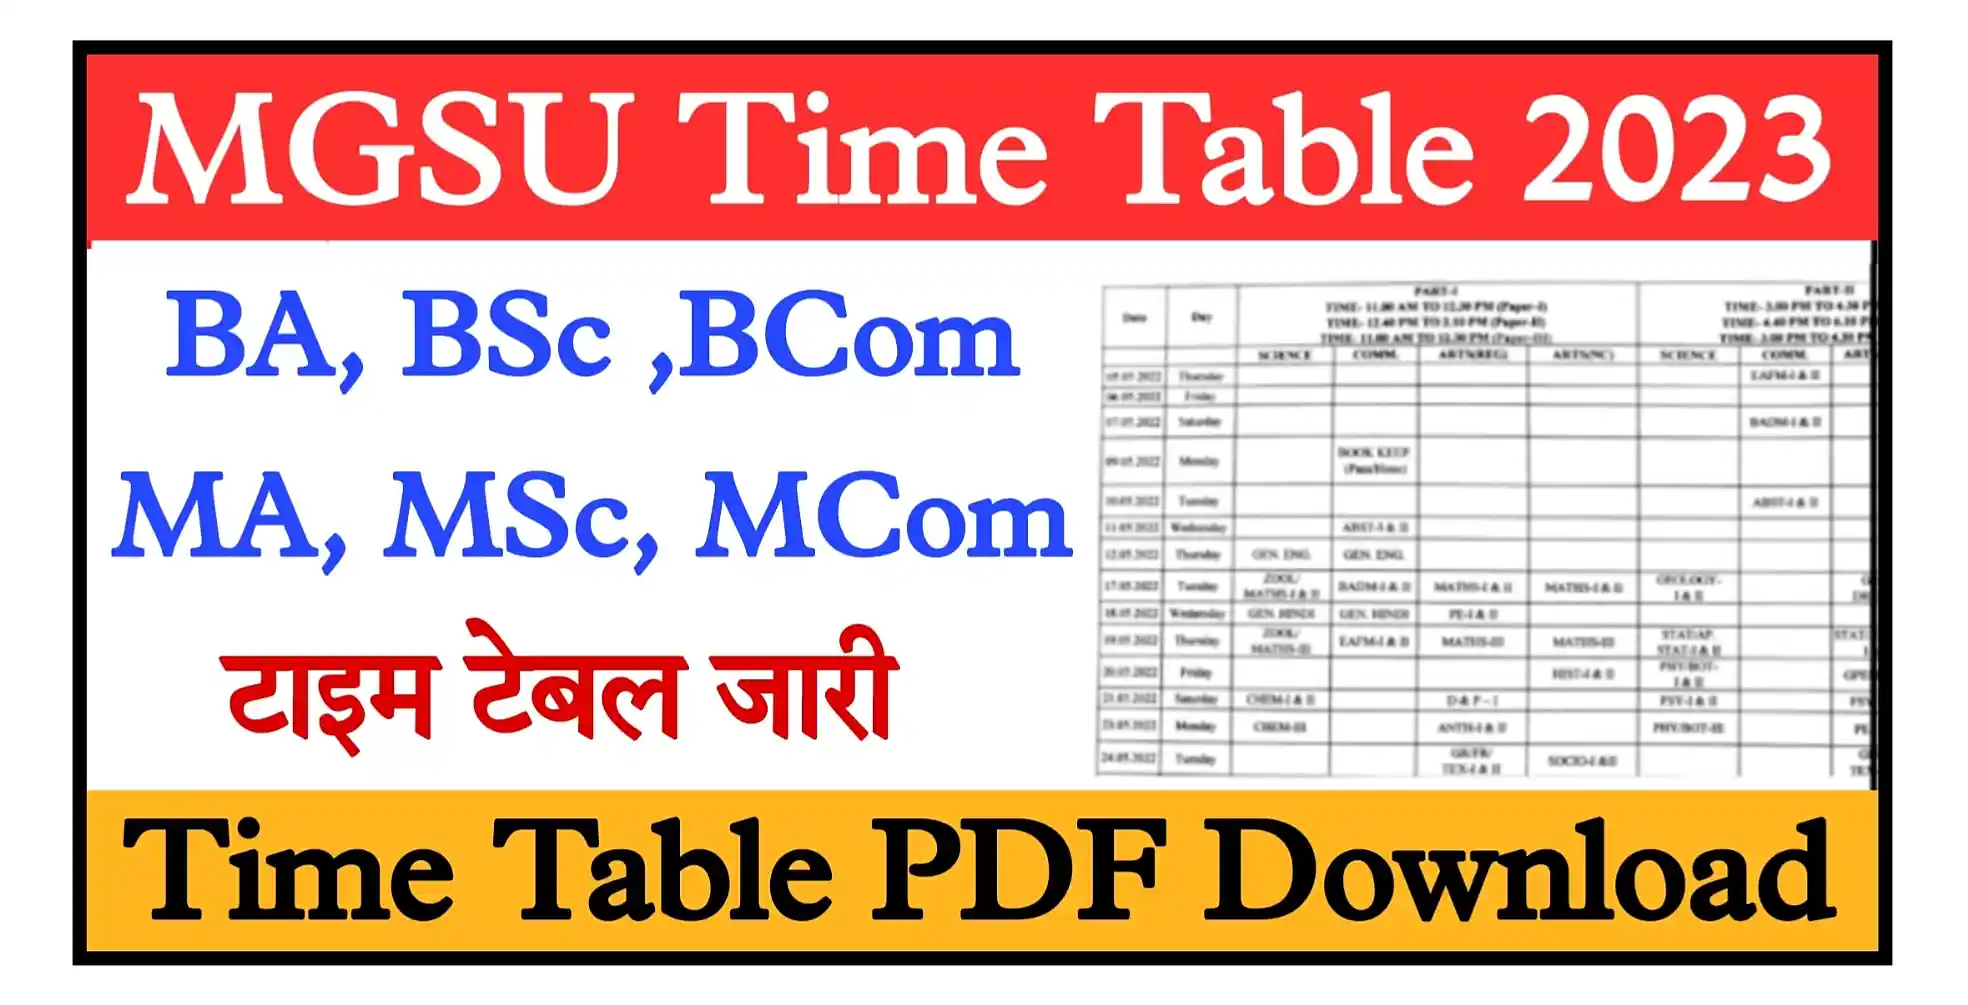 MGSU Time Table 2023 Download Link MGSU Bikaner BA, BSc, BCom Time Table 2023 Download Link